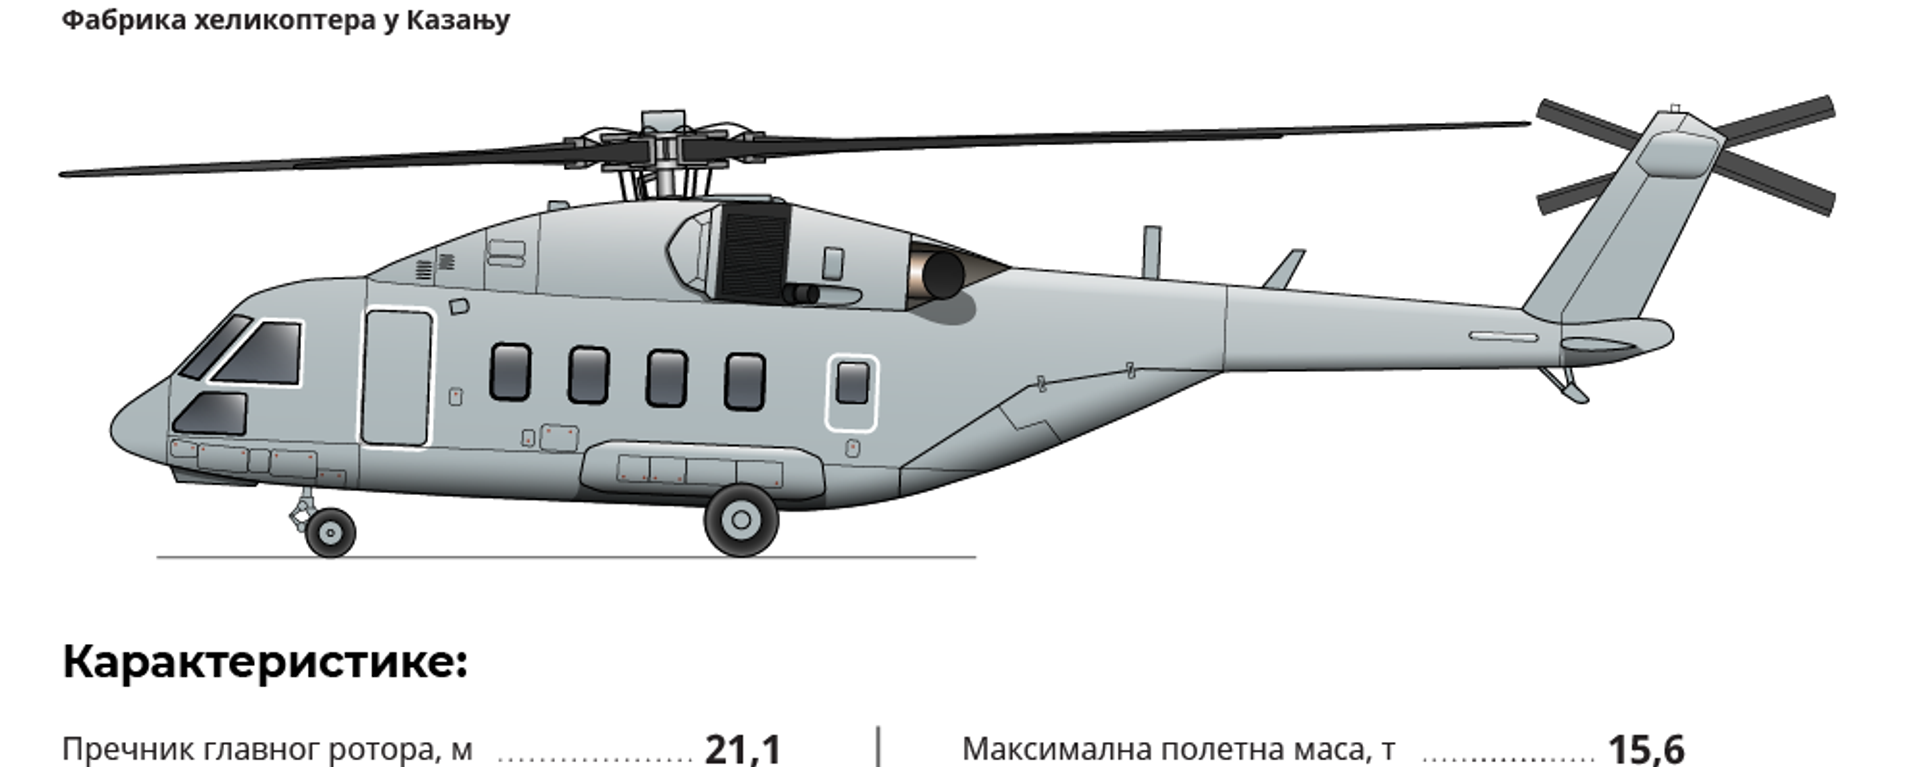 Хеликоптер Ми-38Т - Sputnik Србија, 1920, 09.12.2019